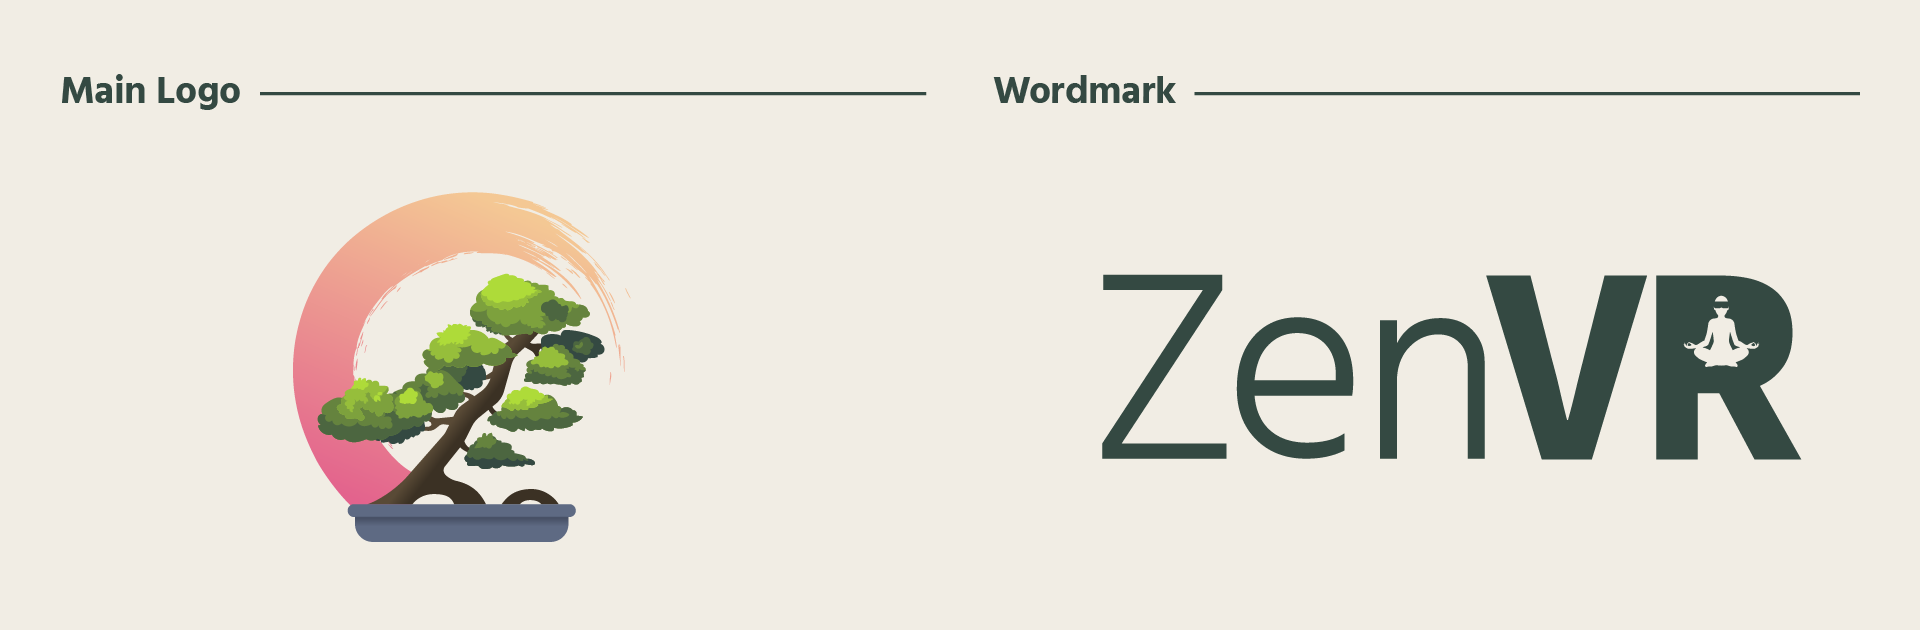 Logo versus Wordmark